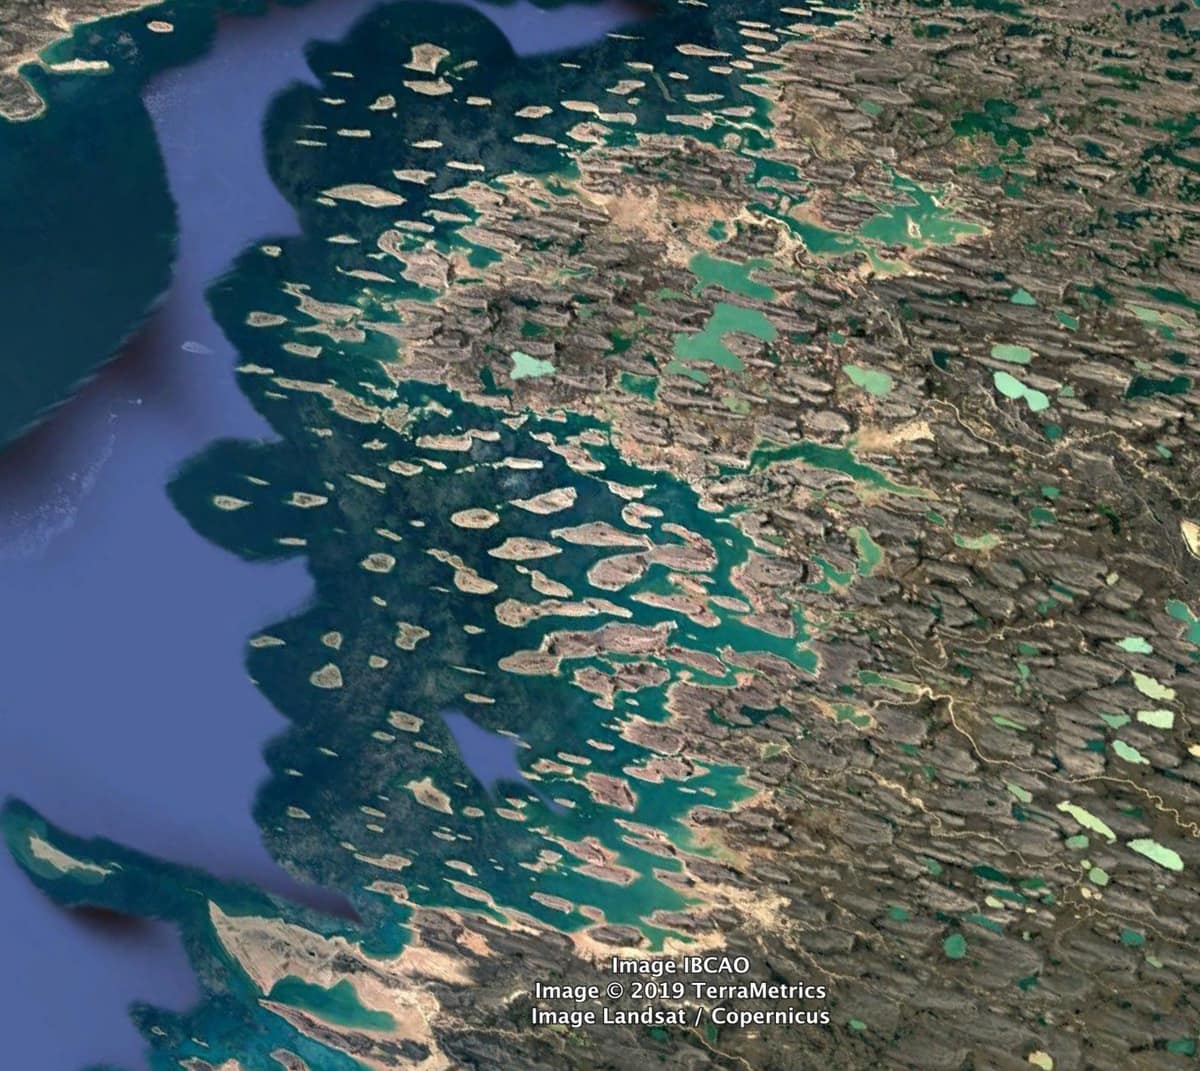 Затонувшие корабли и военные базы: парень показывает интересные места, которые он обнаружил через Google Earth 59